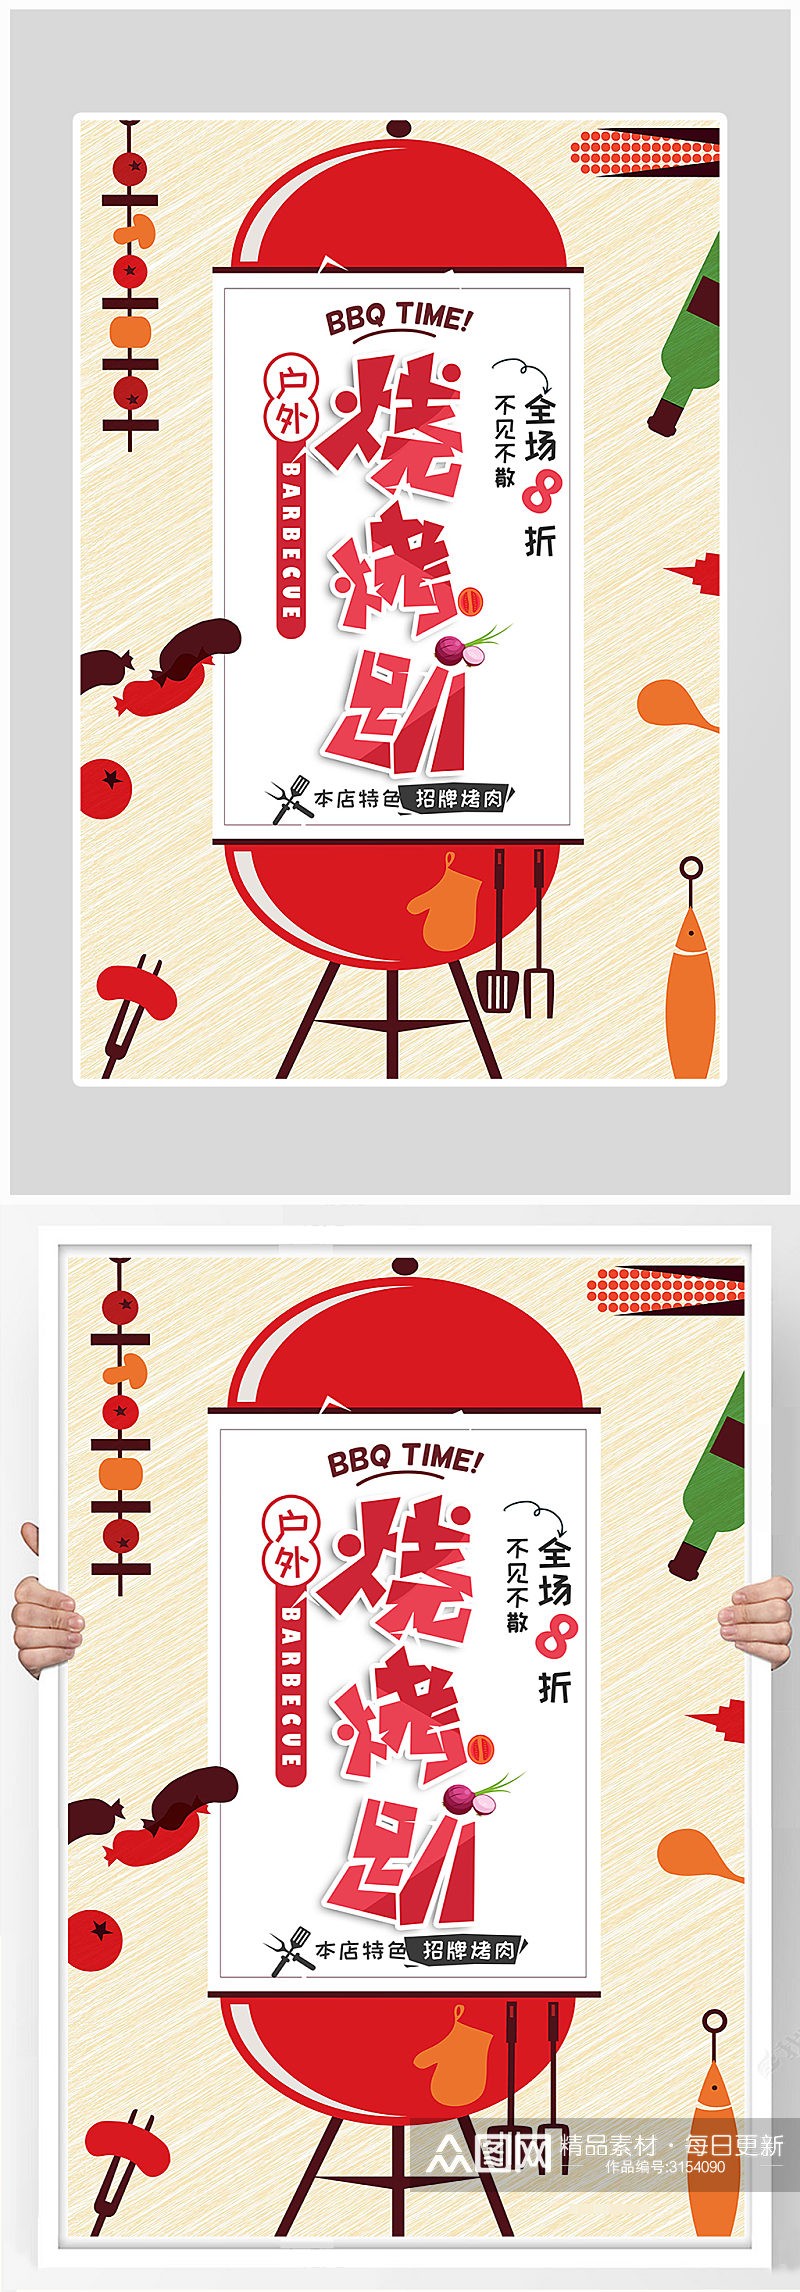 创意简约烧烤BBQ海报设计素材